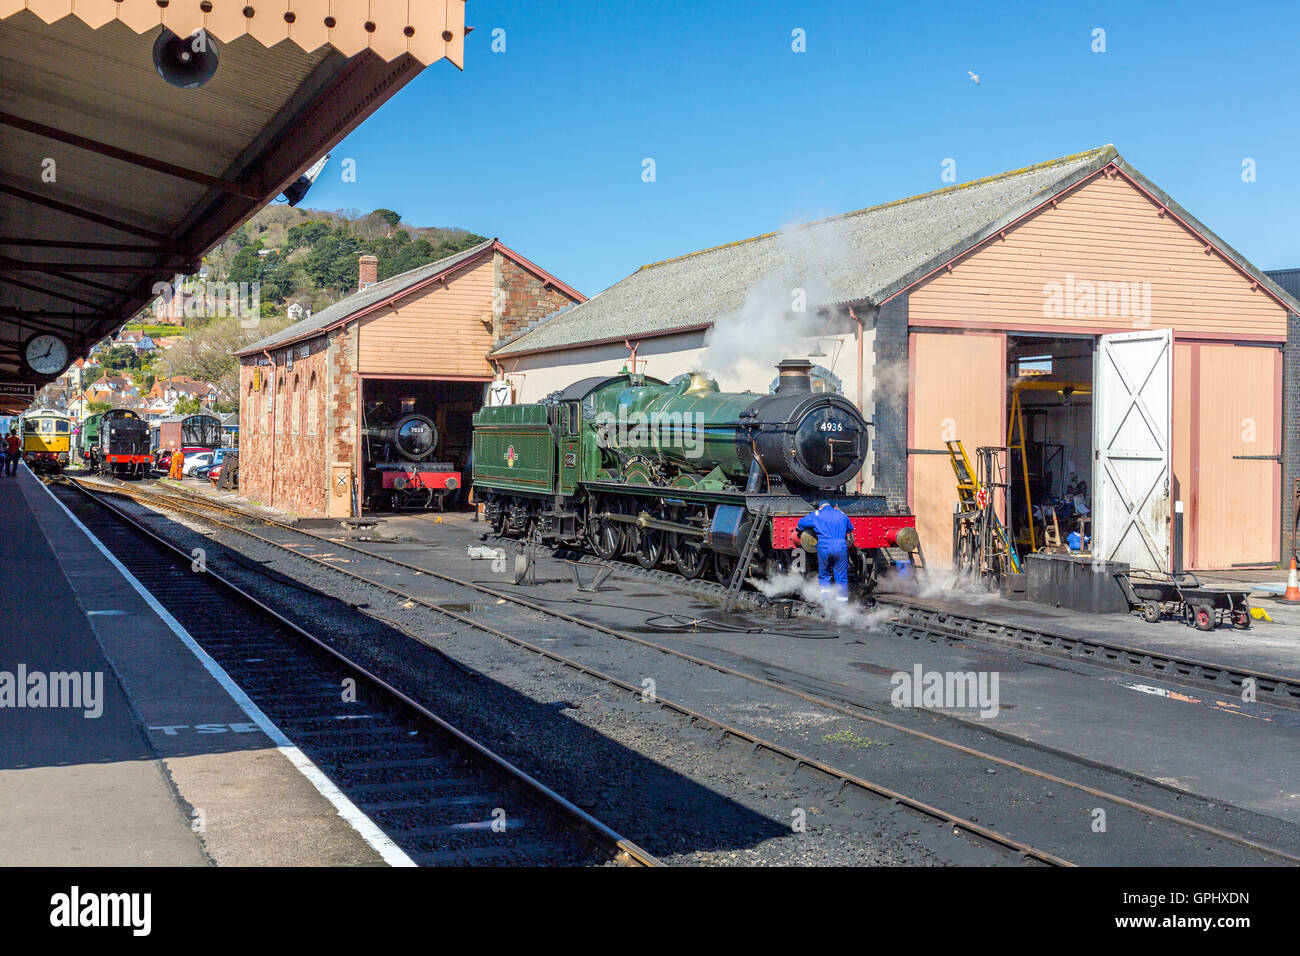 Ex-GWR vapore loco 4396 'Kinlet Hall' ricevere attenzione da installatori a Minehead stazione, West Somerset Railway, England, Regno Unito Foto Stock